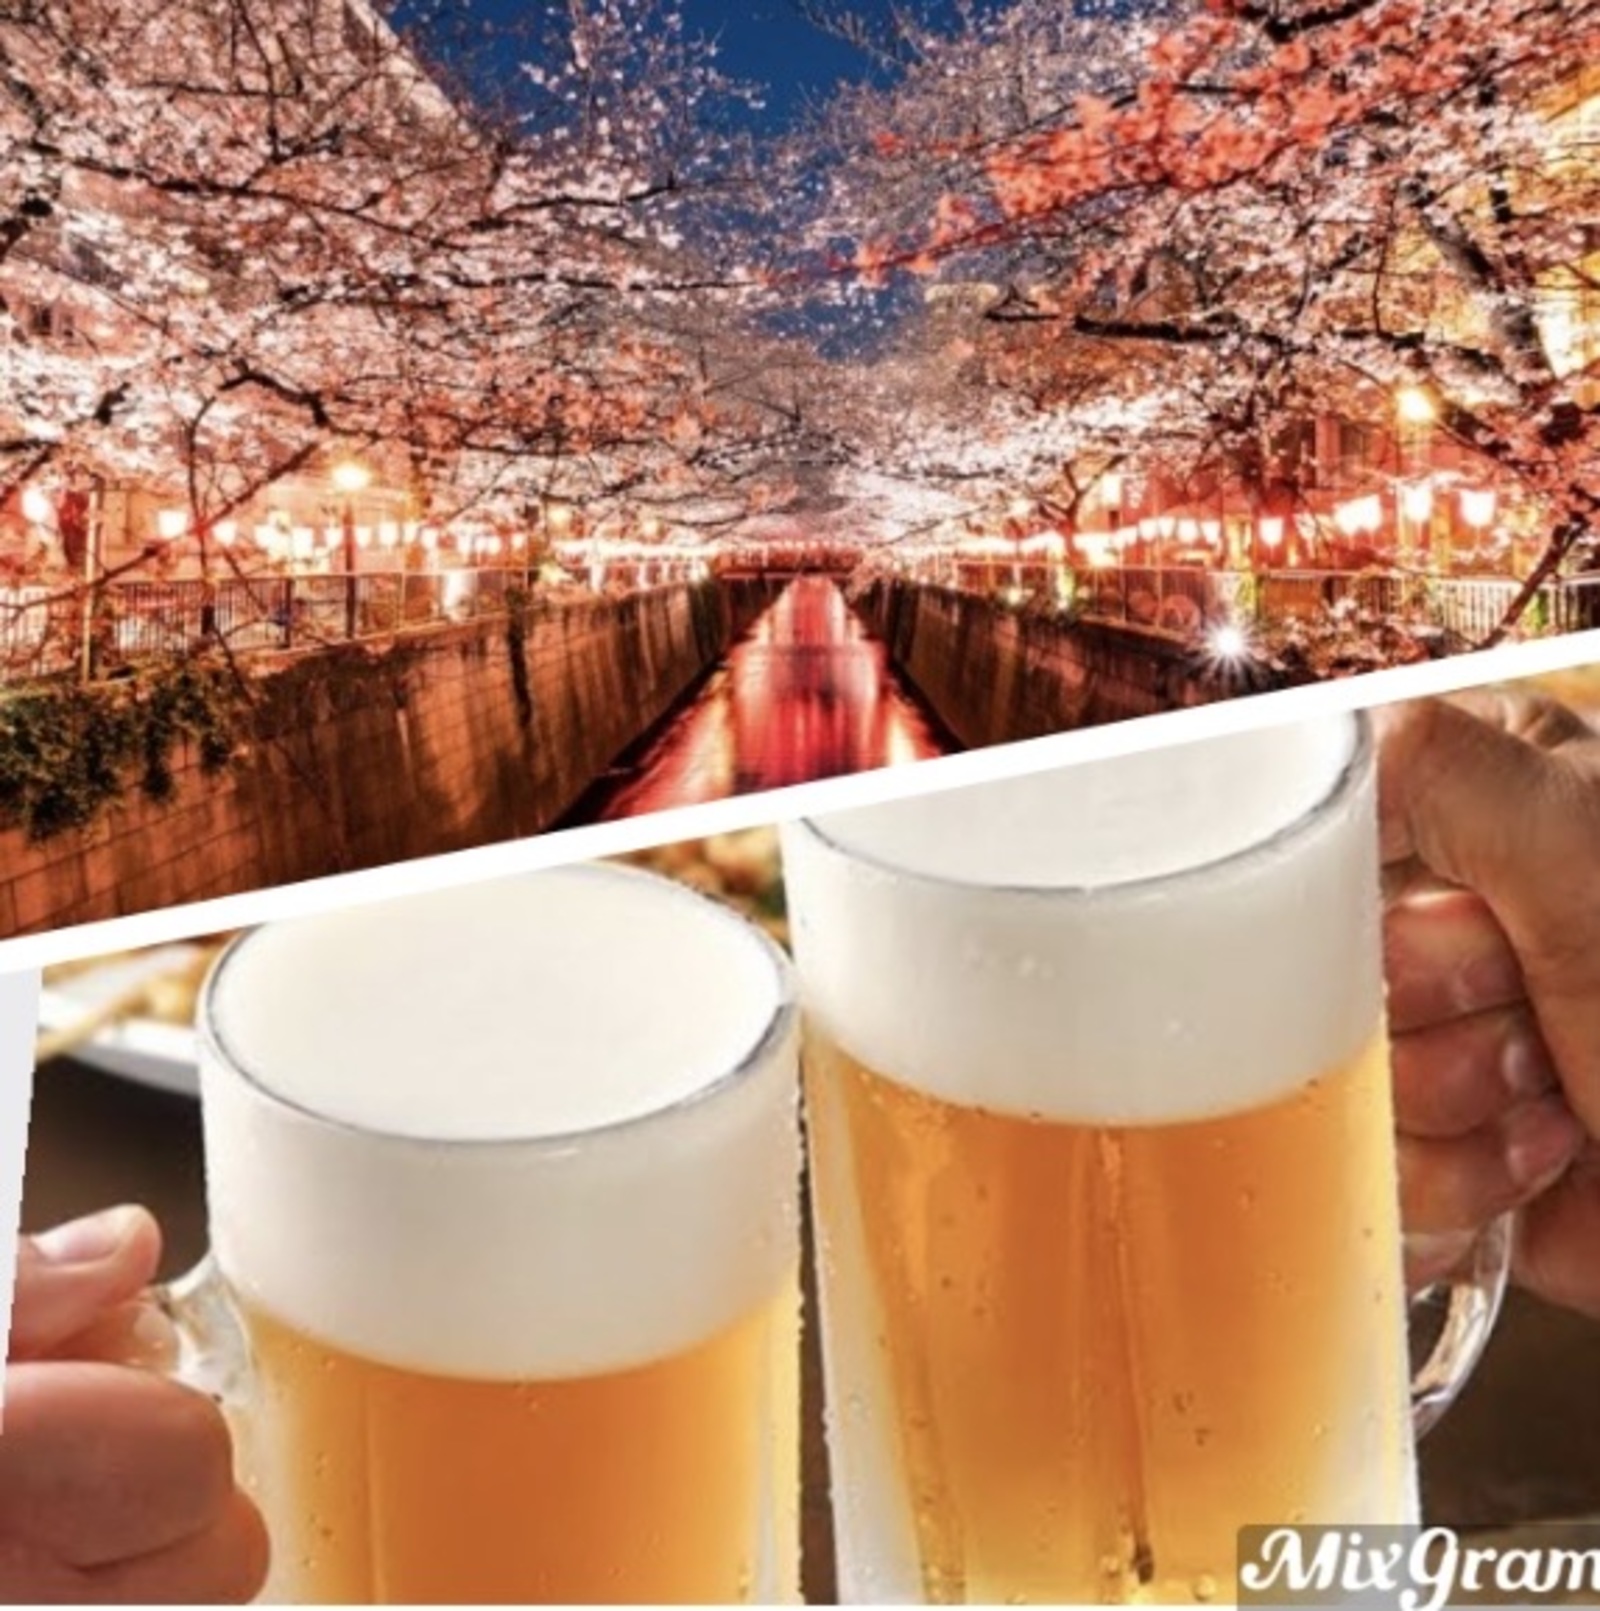 【女性主催】🌸 目黒川の夜桜ライトアップを堪能して居酒屋で乾杯しよう🍃🍻